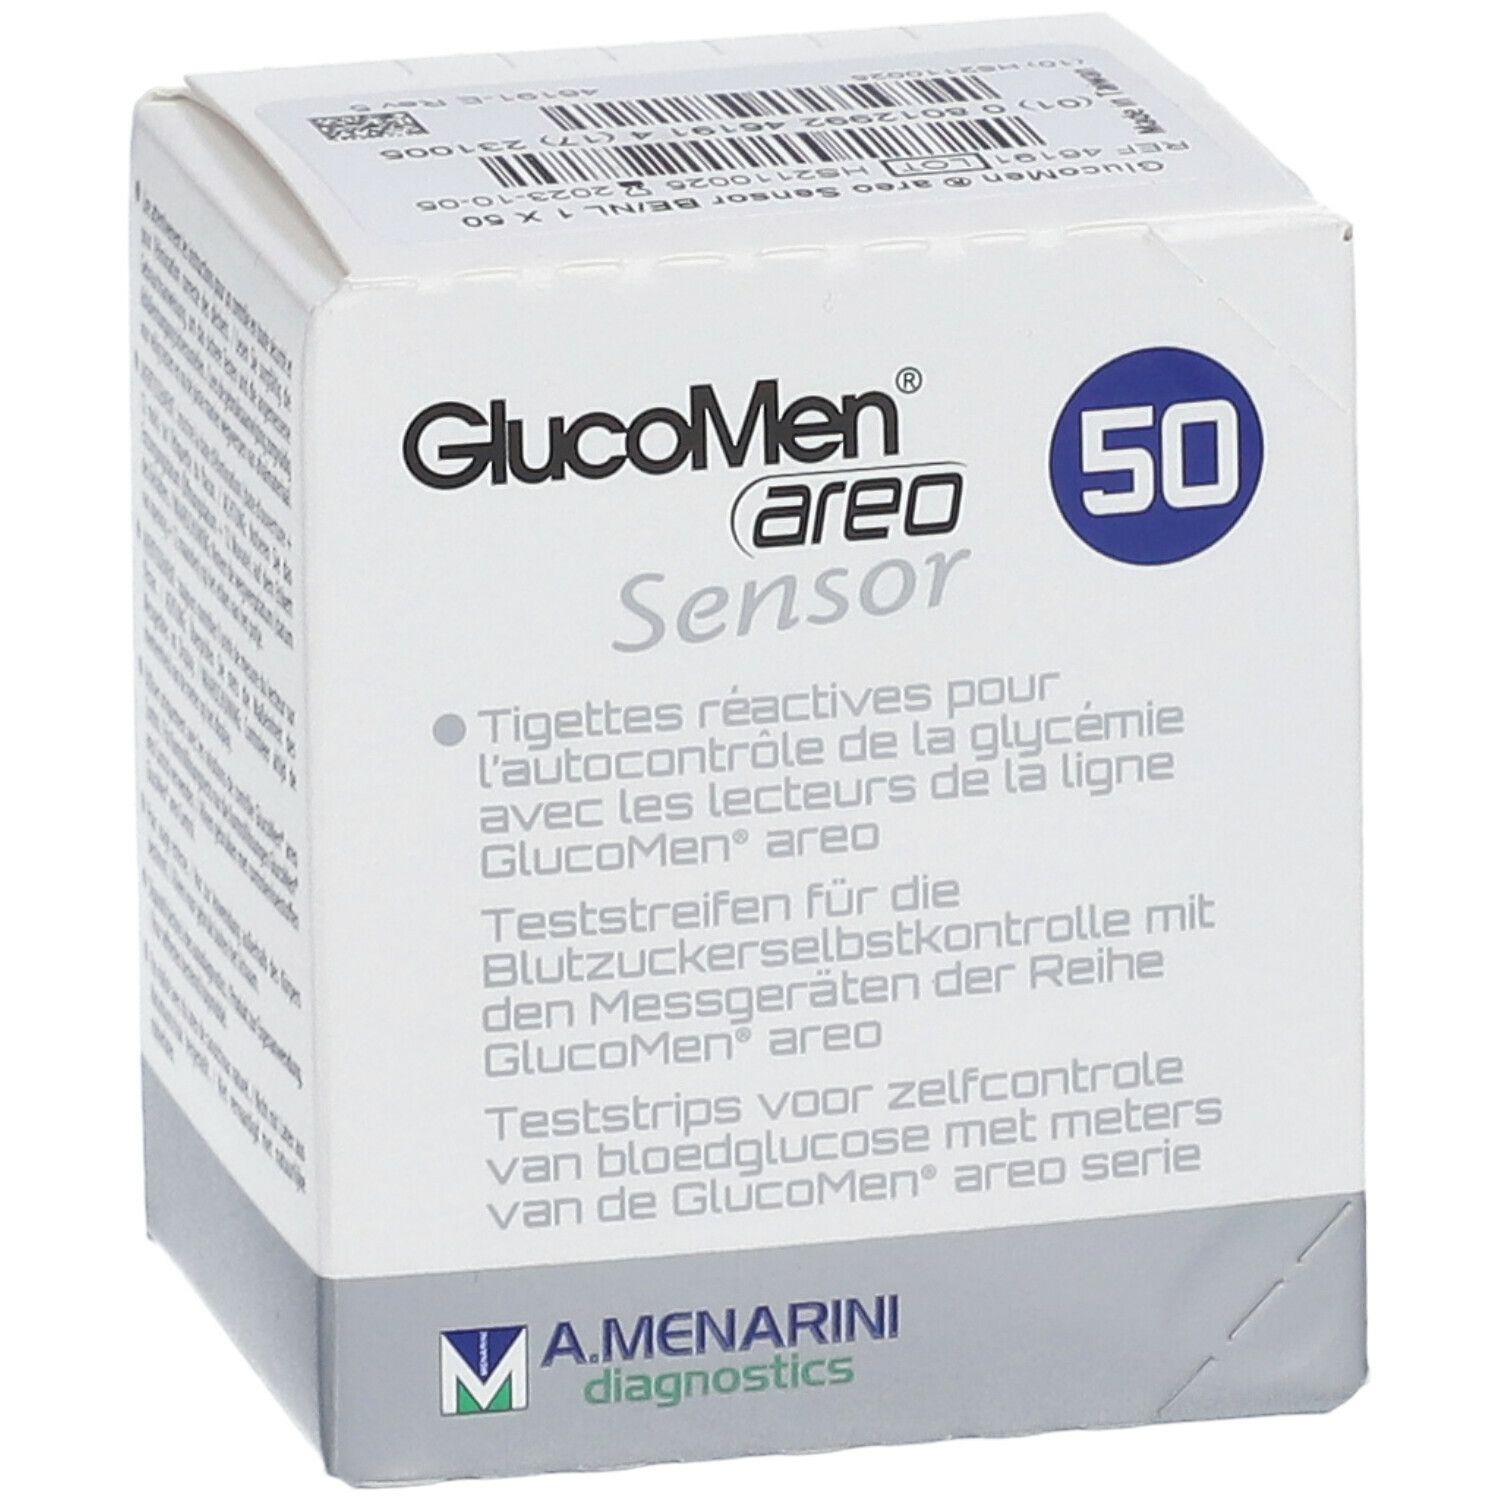 GlucoMen Aero Sensor